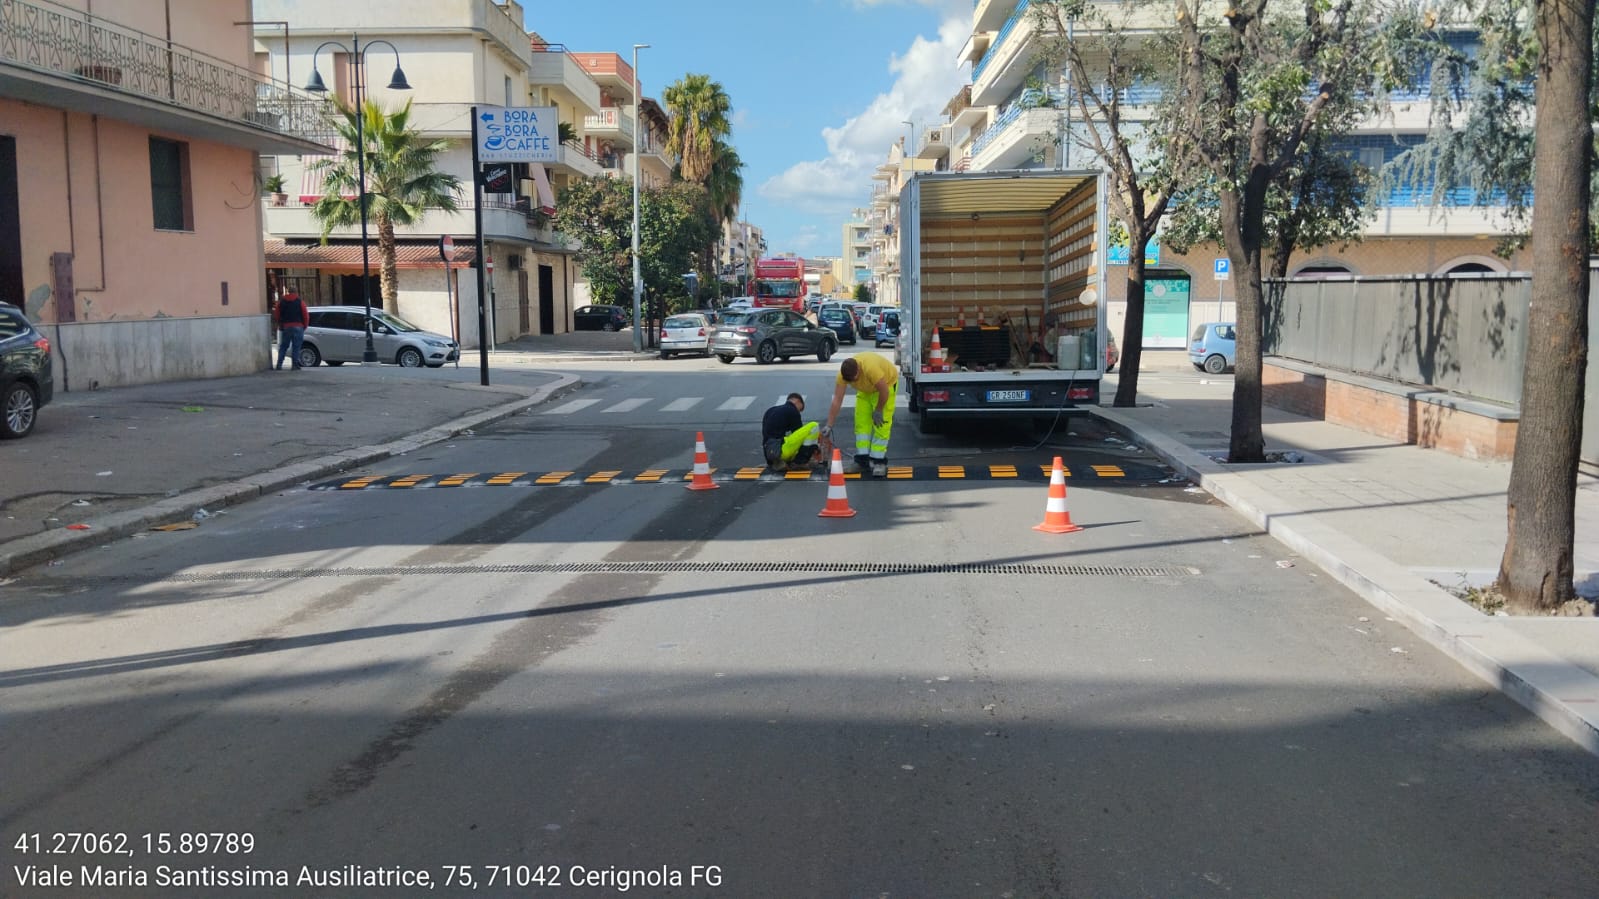 Continua l'installazione di dossi artificiali sulle strade di Cerignola 